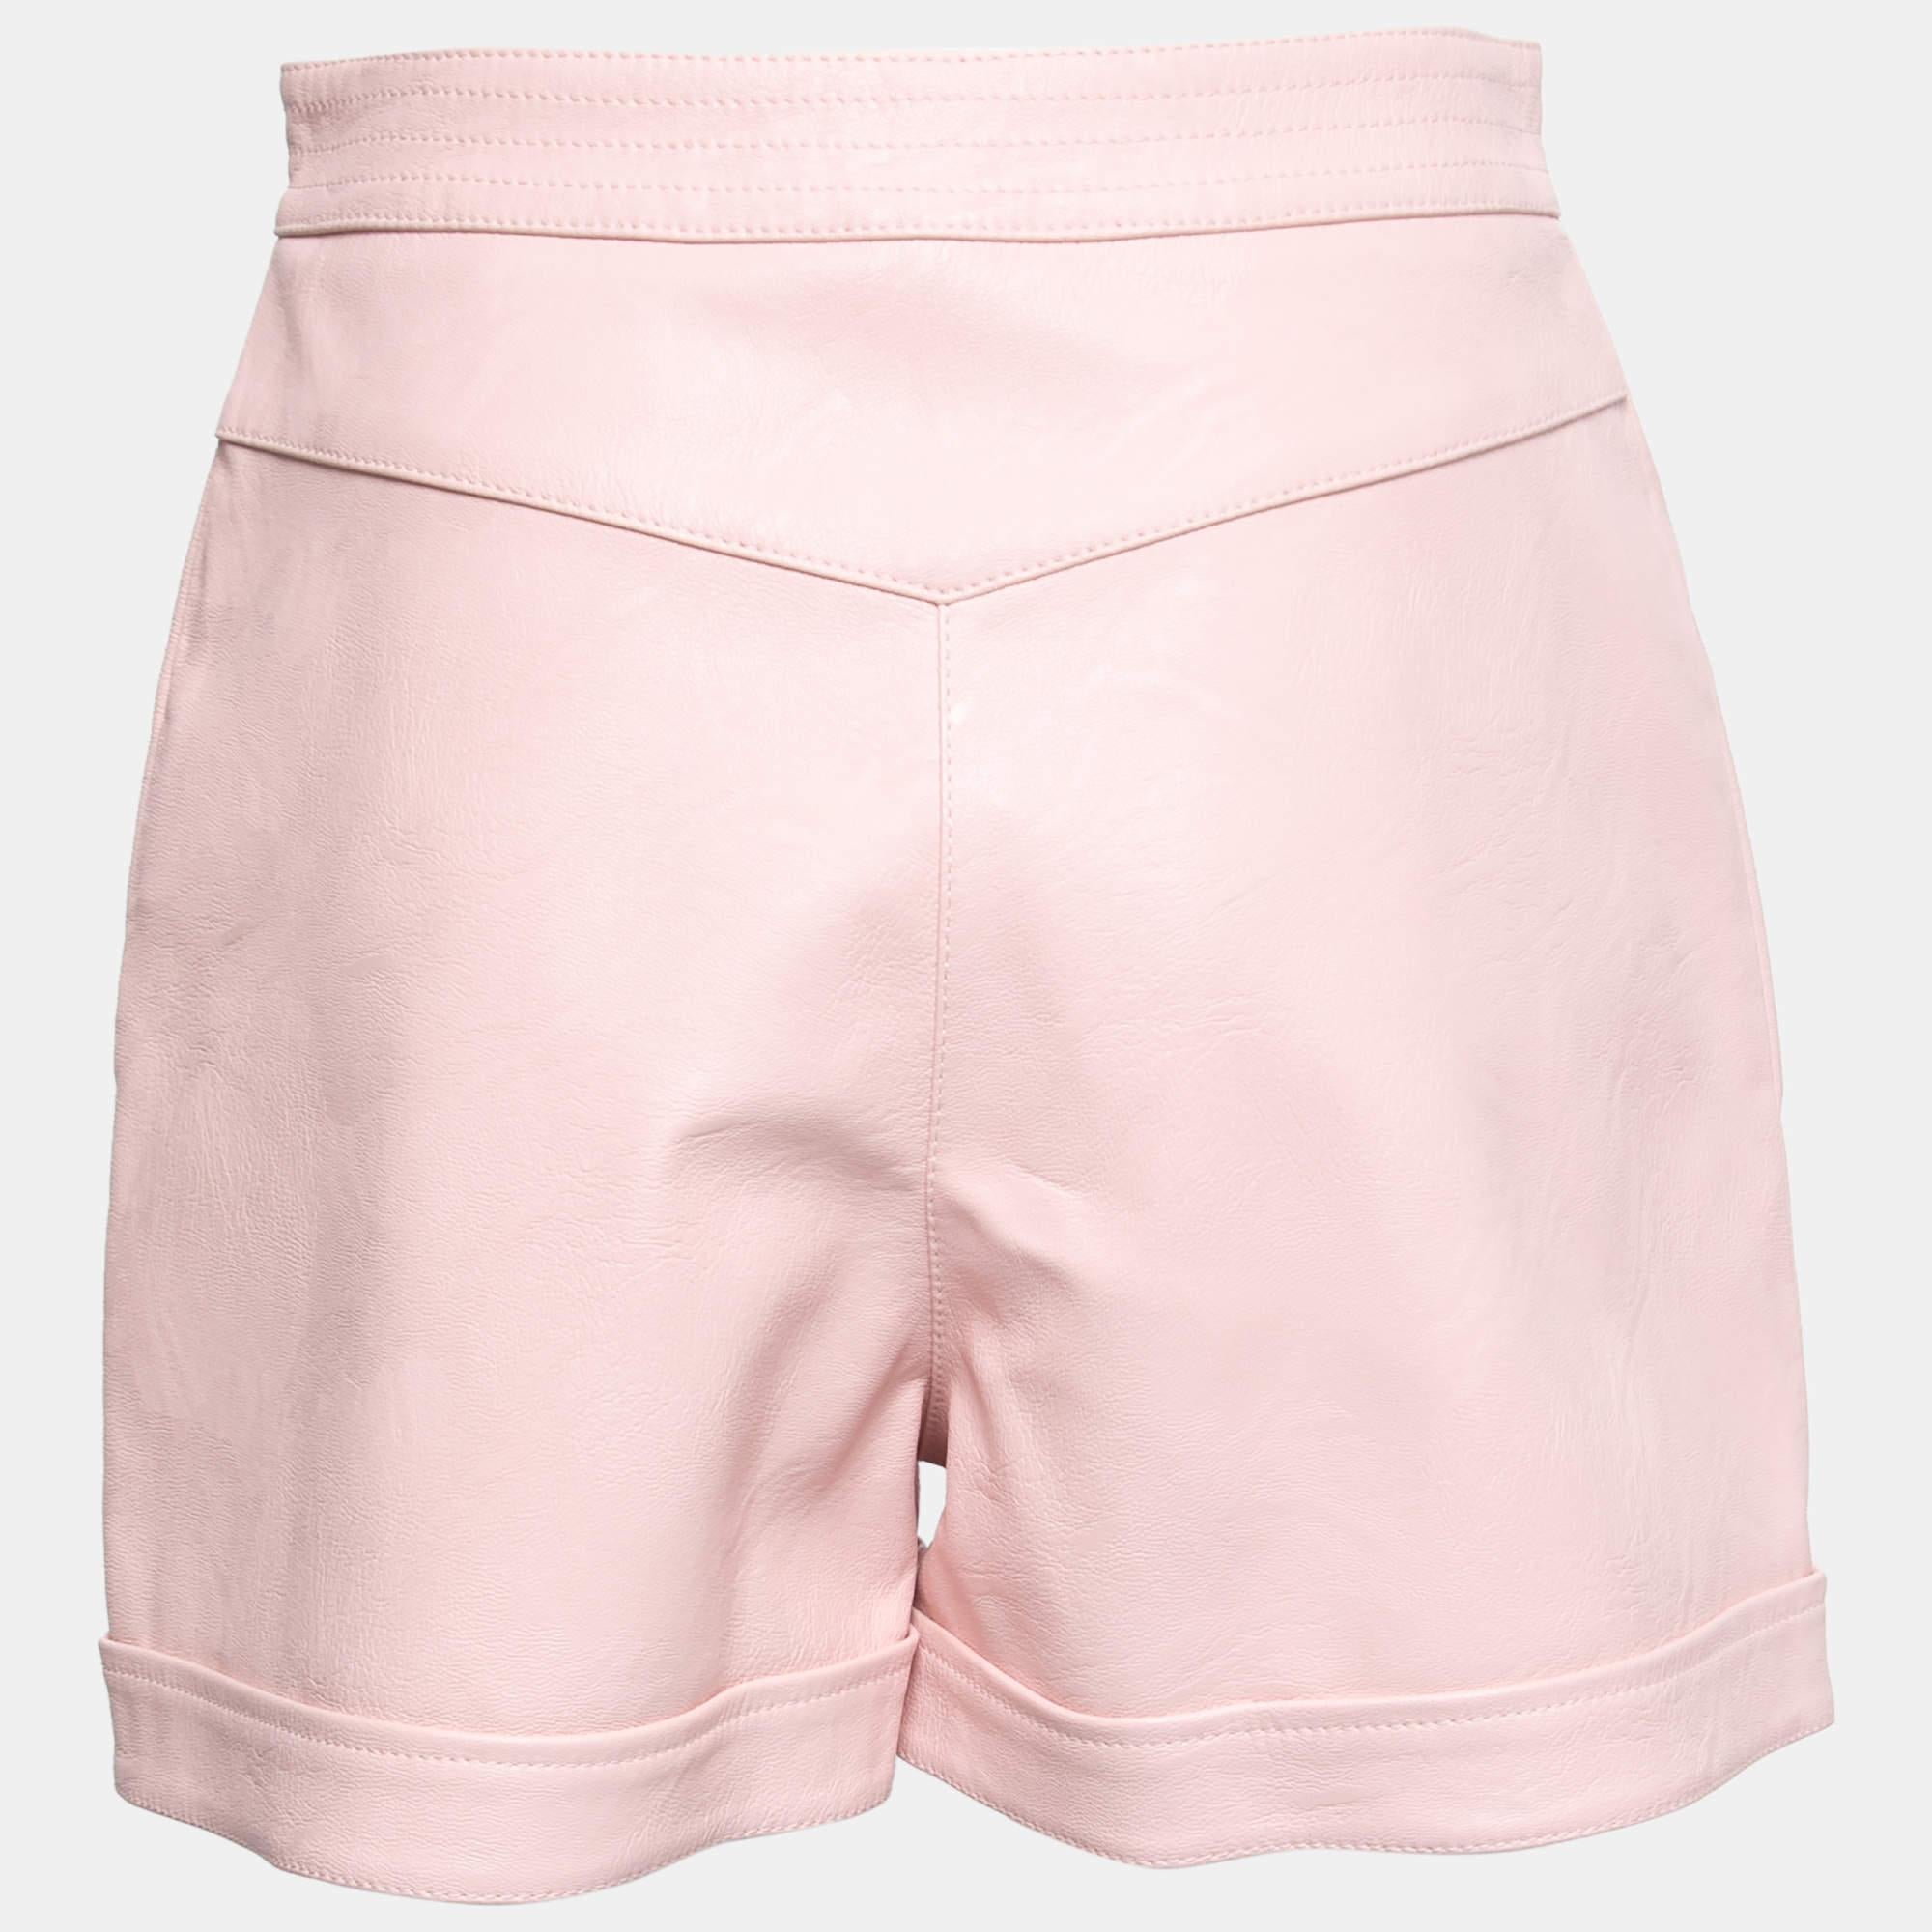 Les vacances à la plage exigent une jolie paire de shorts comme celui-ci. Cousu à l'aide d'un tissu de haute qualité, ce short est agrémenté de détails classiques et présente une superbe longueur. Portez-le avec des hauts courts ou des T-shirts.

